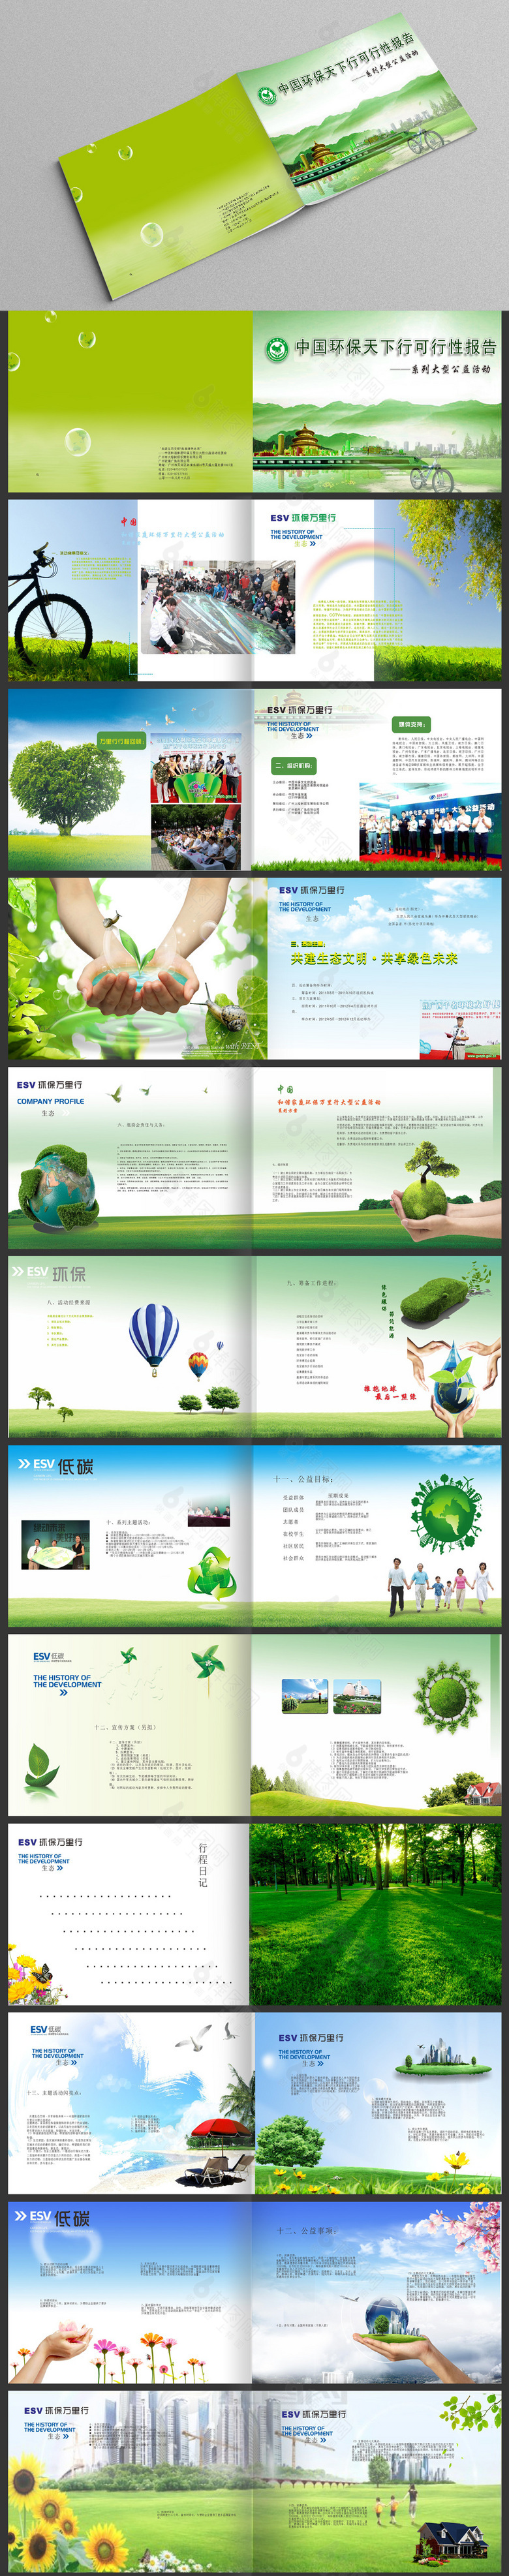 绿色节能环保宣传册